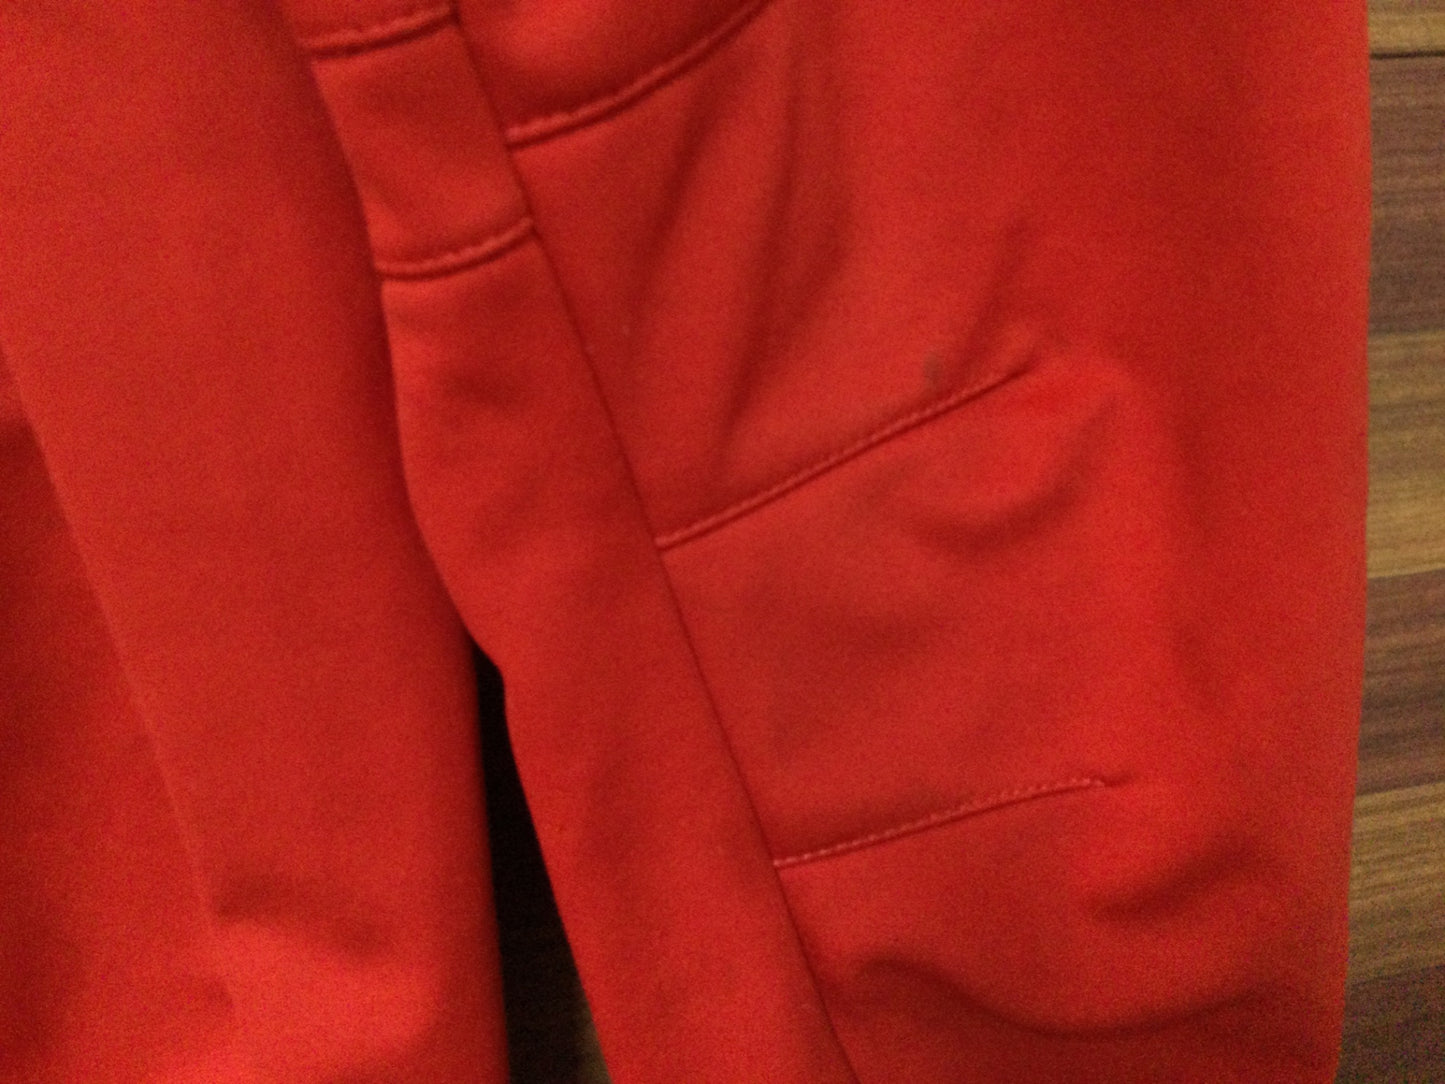 HX271 ゼロ 冬用ジャケット 裏起毛 赤/白/黒 XSサイズ ※やや汚れあり